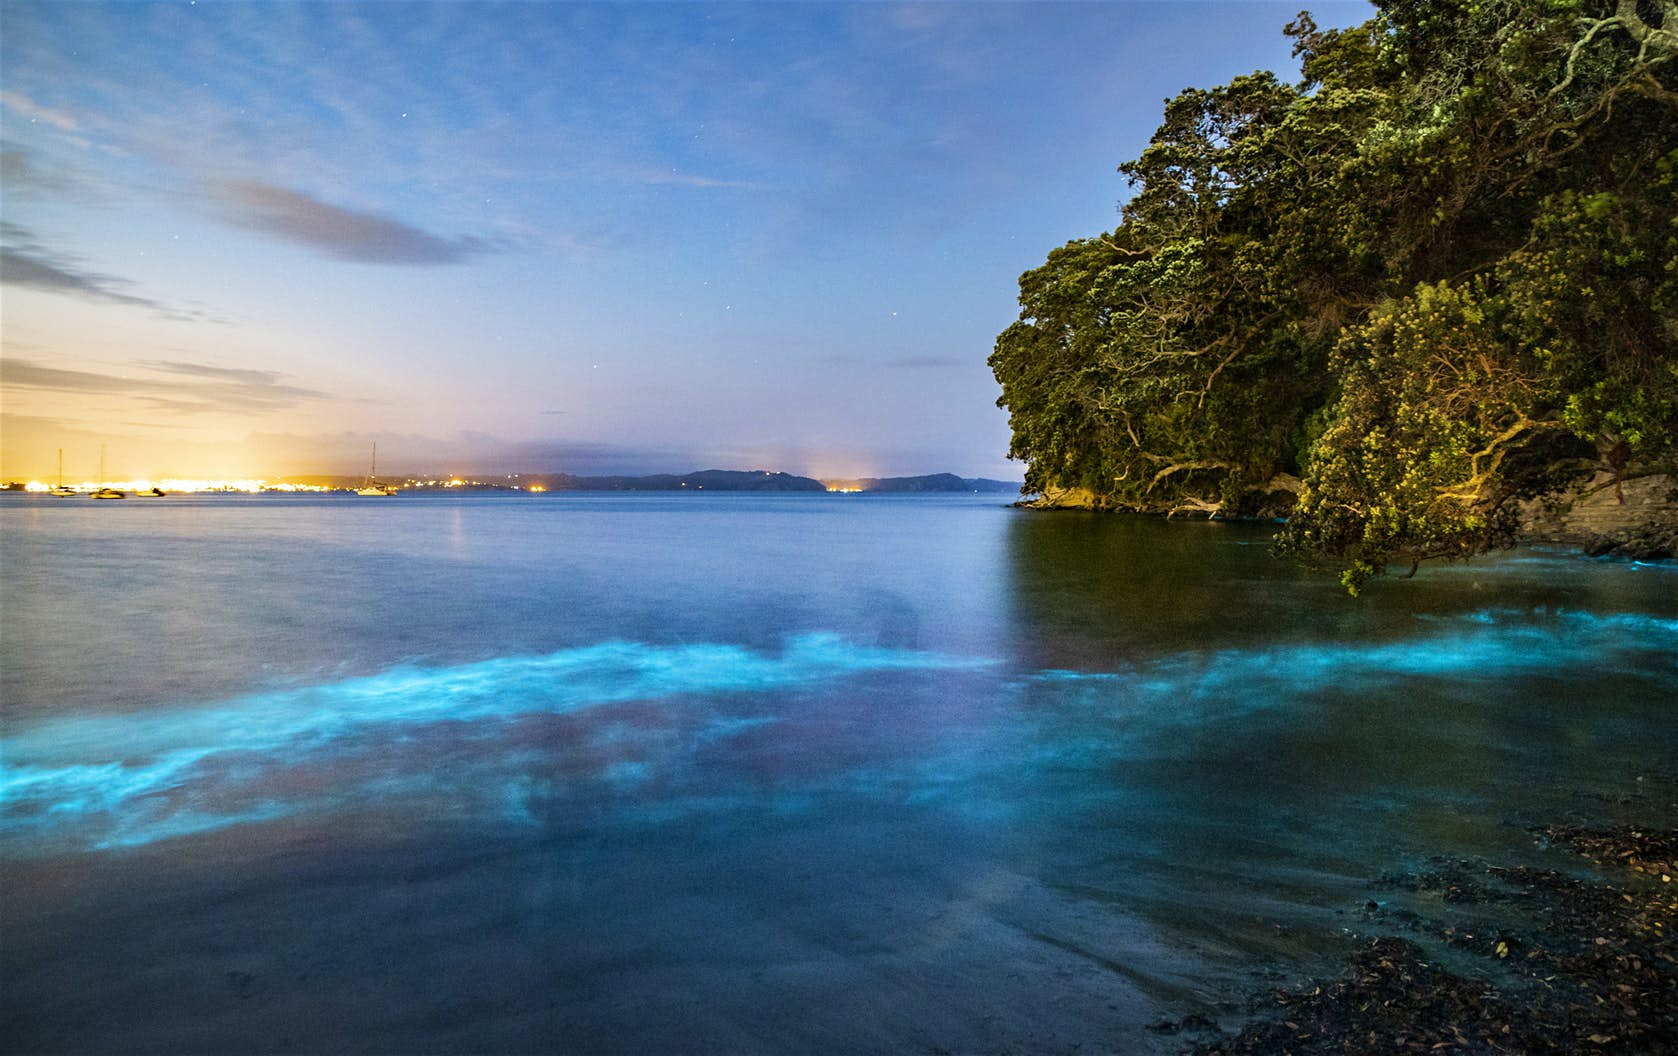 Le acque intorno ad Auckland sono state viste brillare di blu